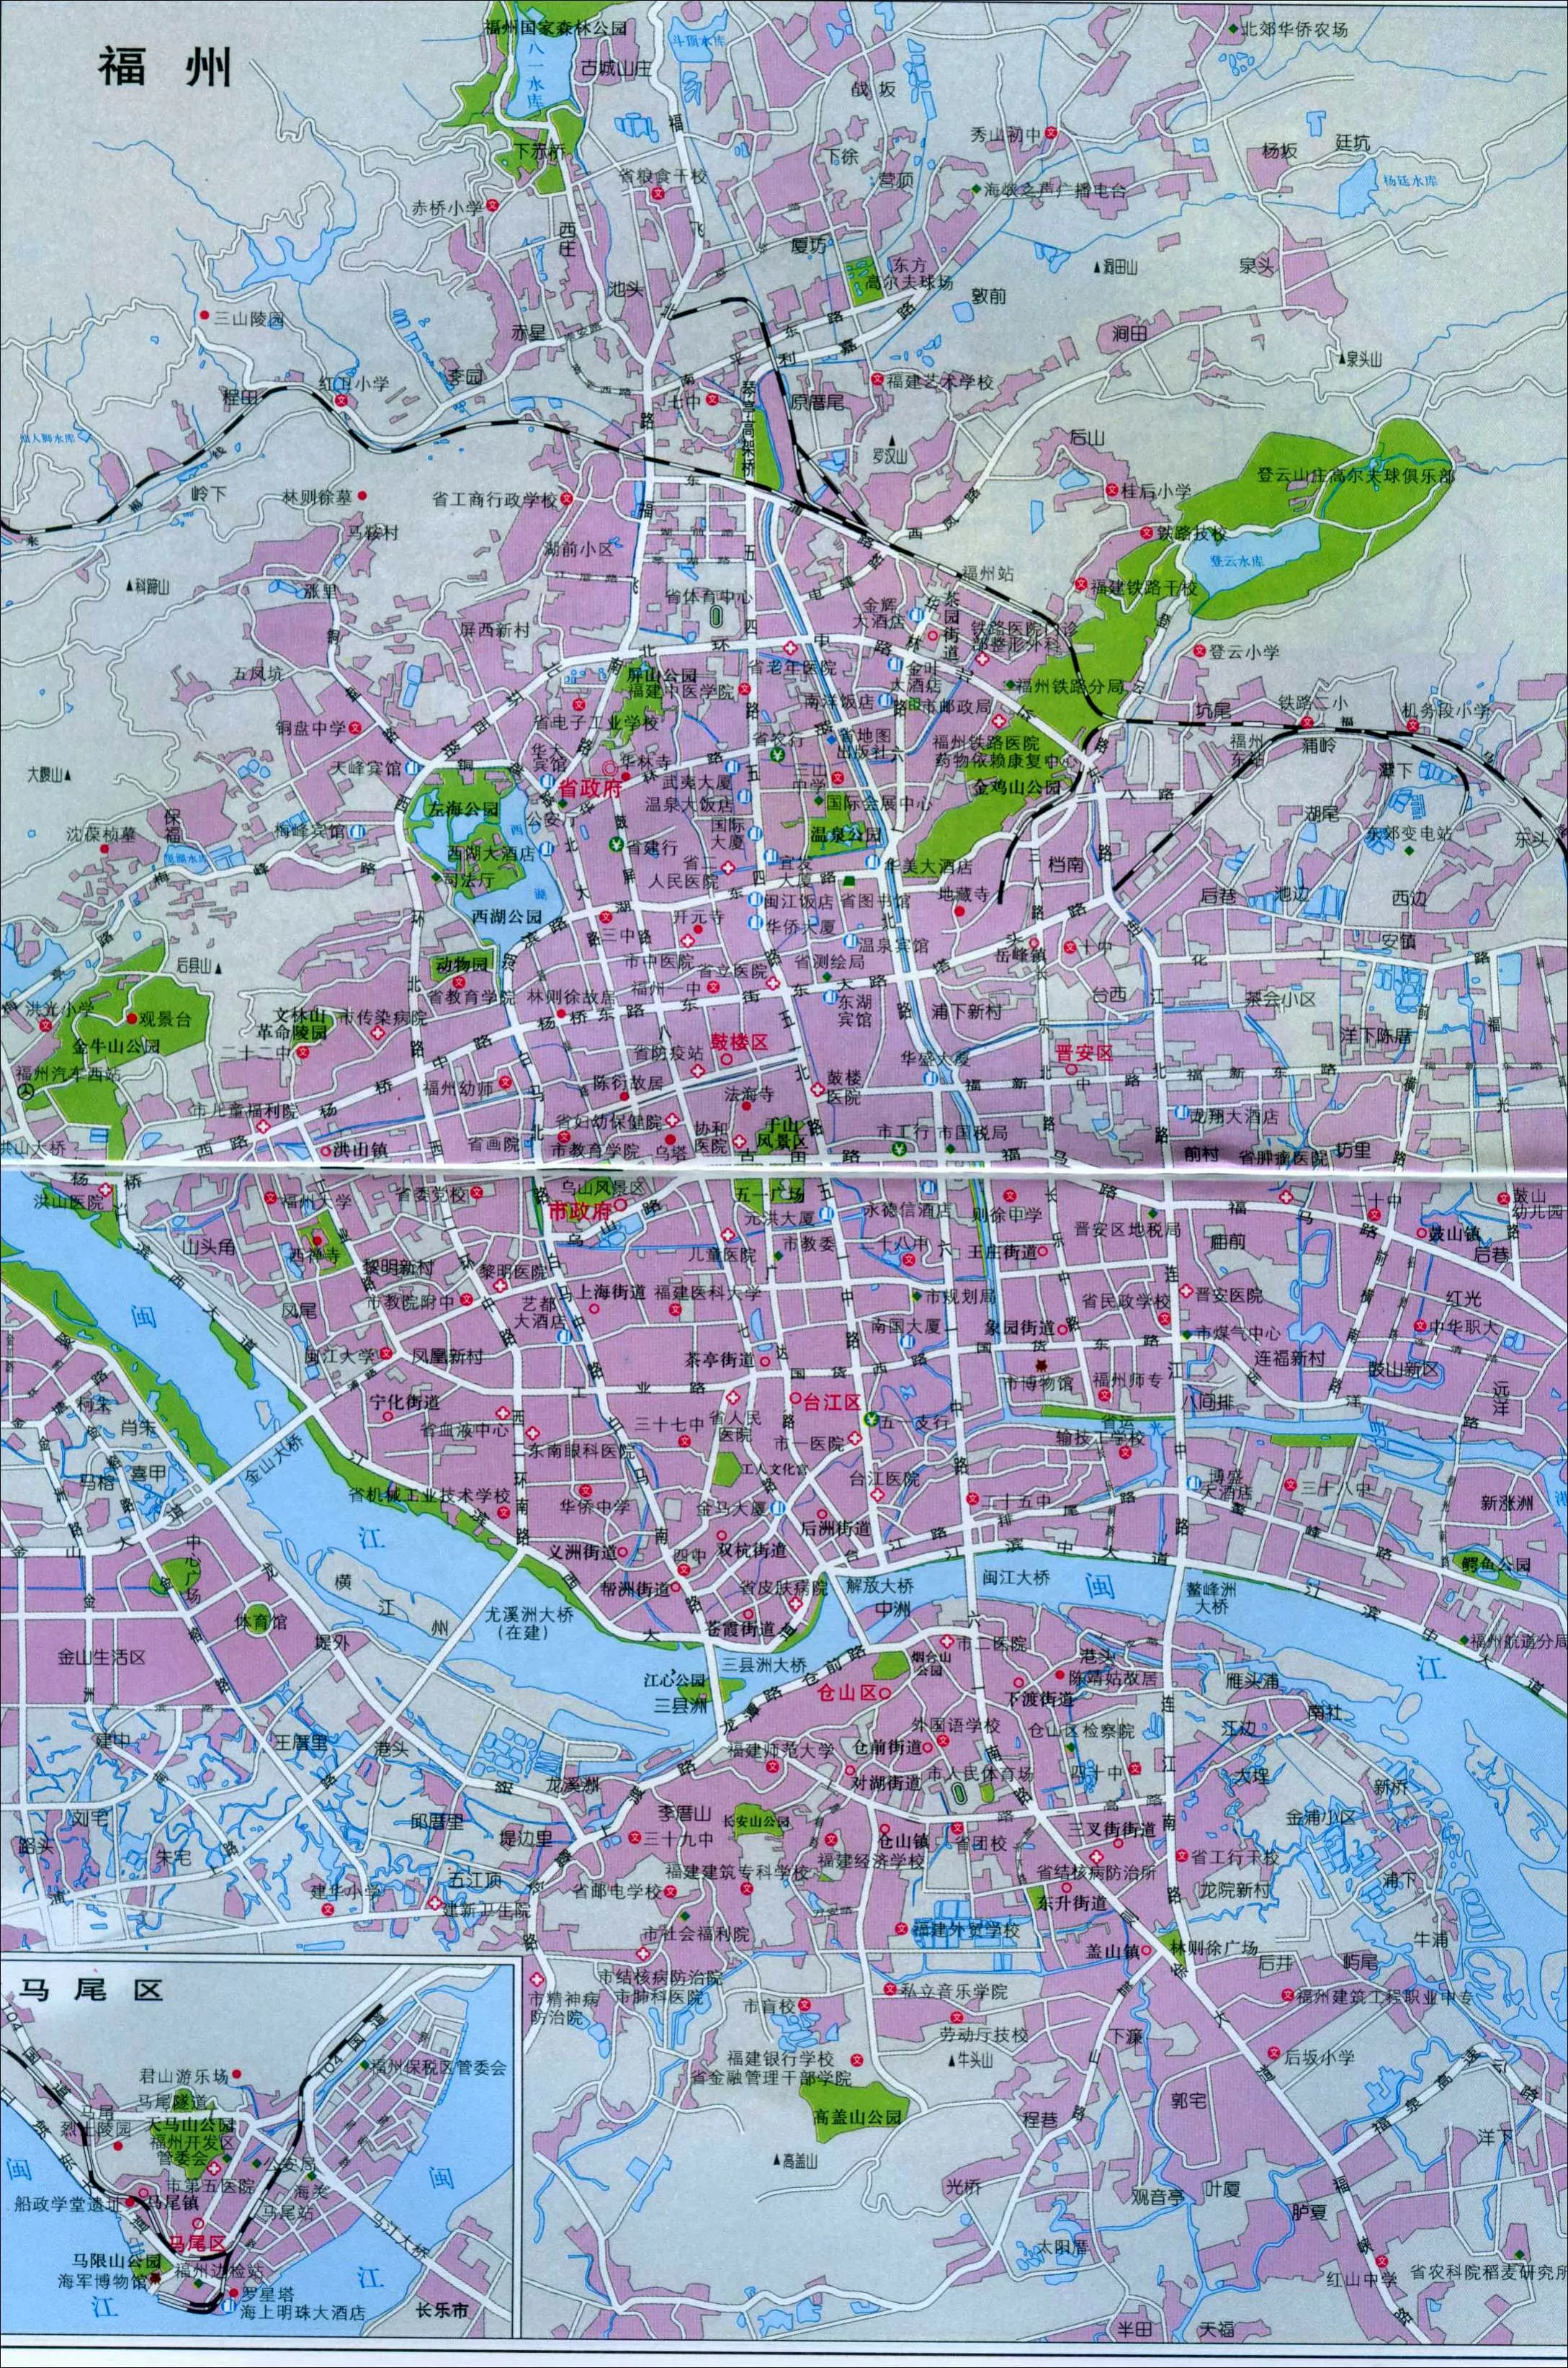 福州市区地图 - 地图全图 - 地理教师网